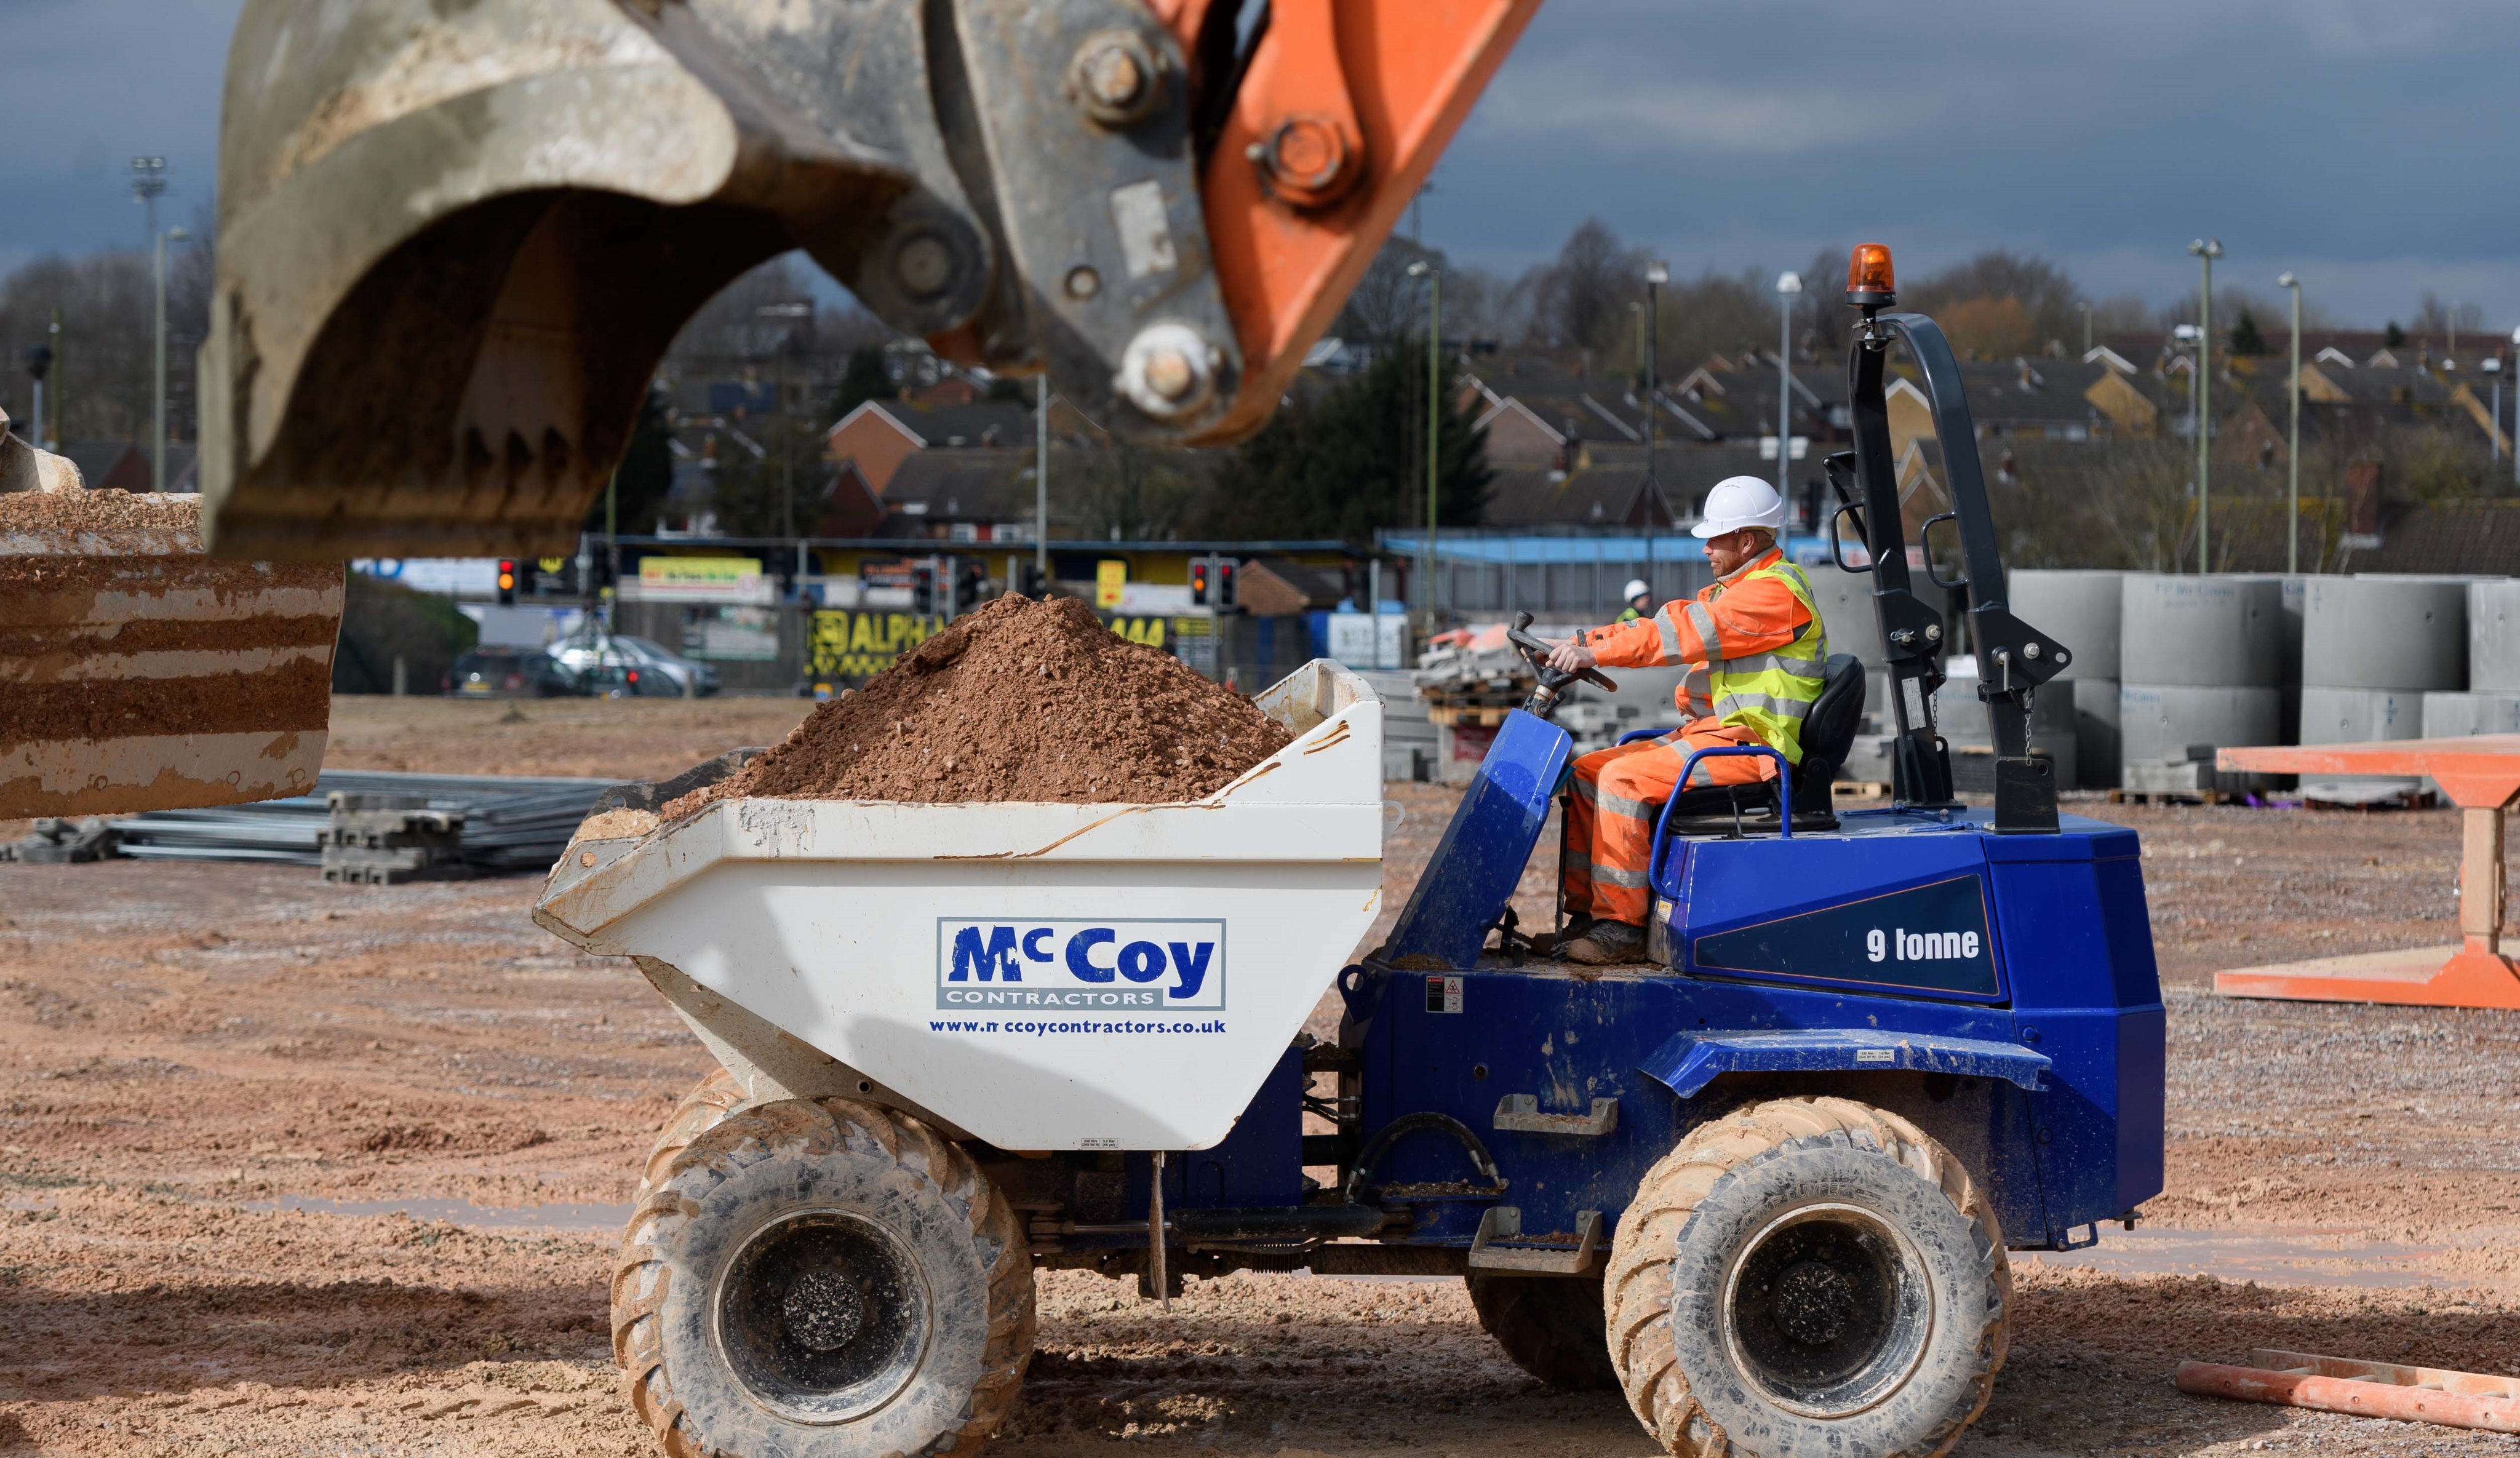 McCoy Contractors Ltd